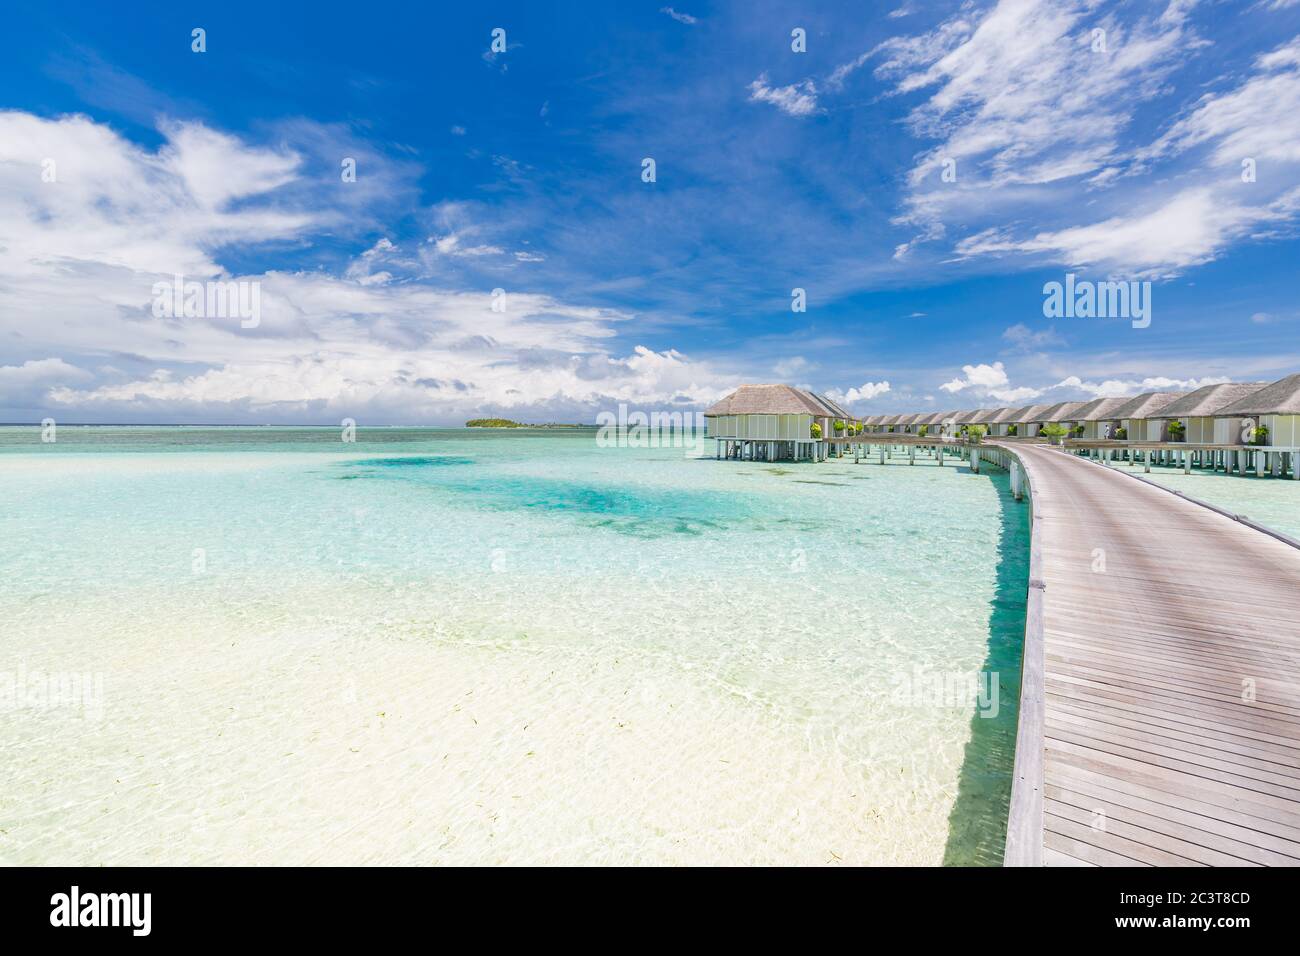 Tropisches Paradies: Blick auf über Wasser Bungalows in einem Resort auf den Malediven, Indischer Ozean. Langer Steg, der unter blauem tropischem Himmel in die Wasservillen führt Stockfoto